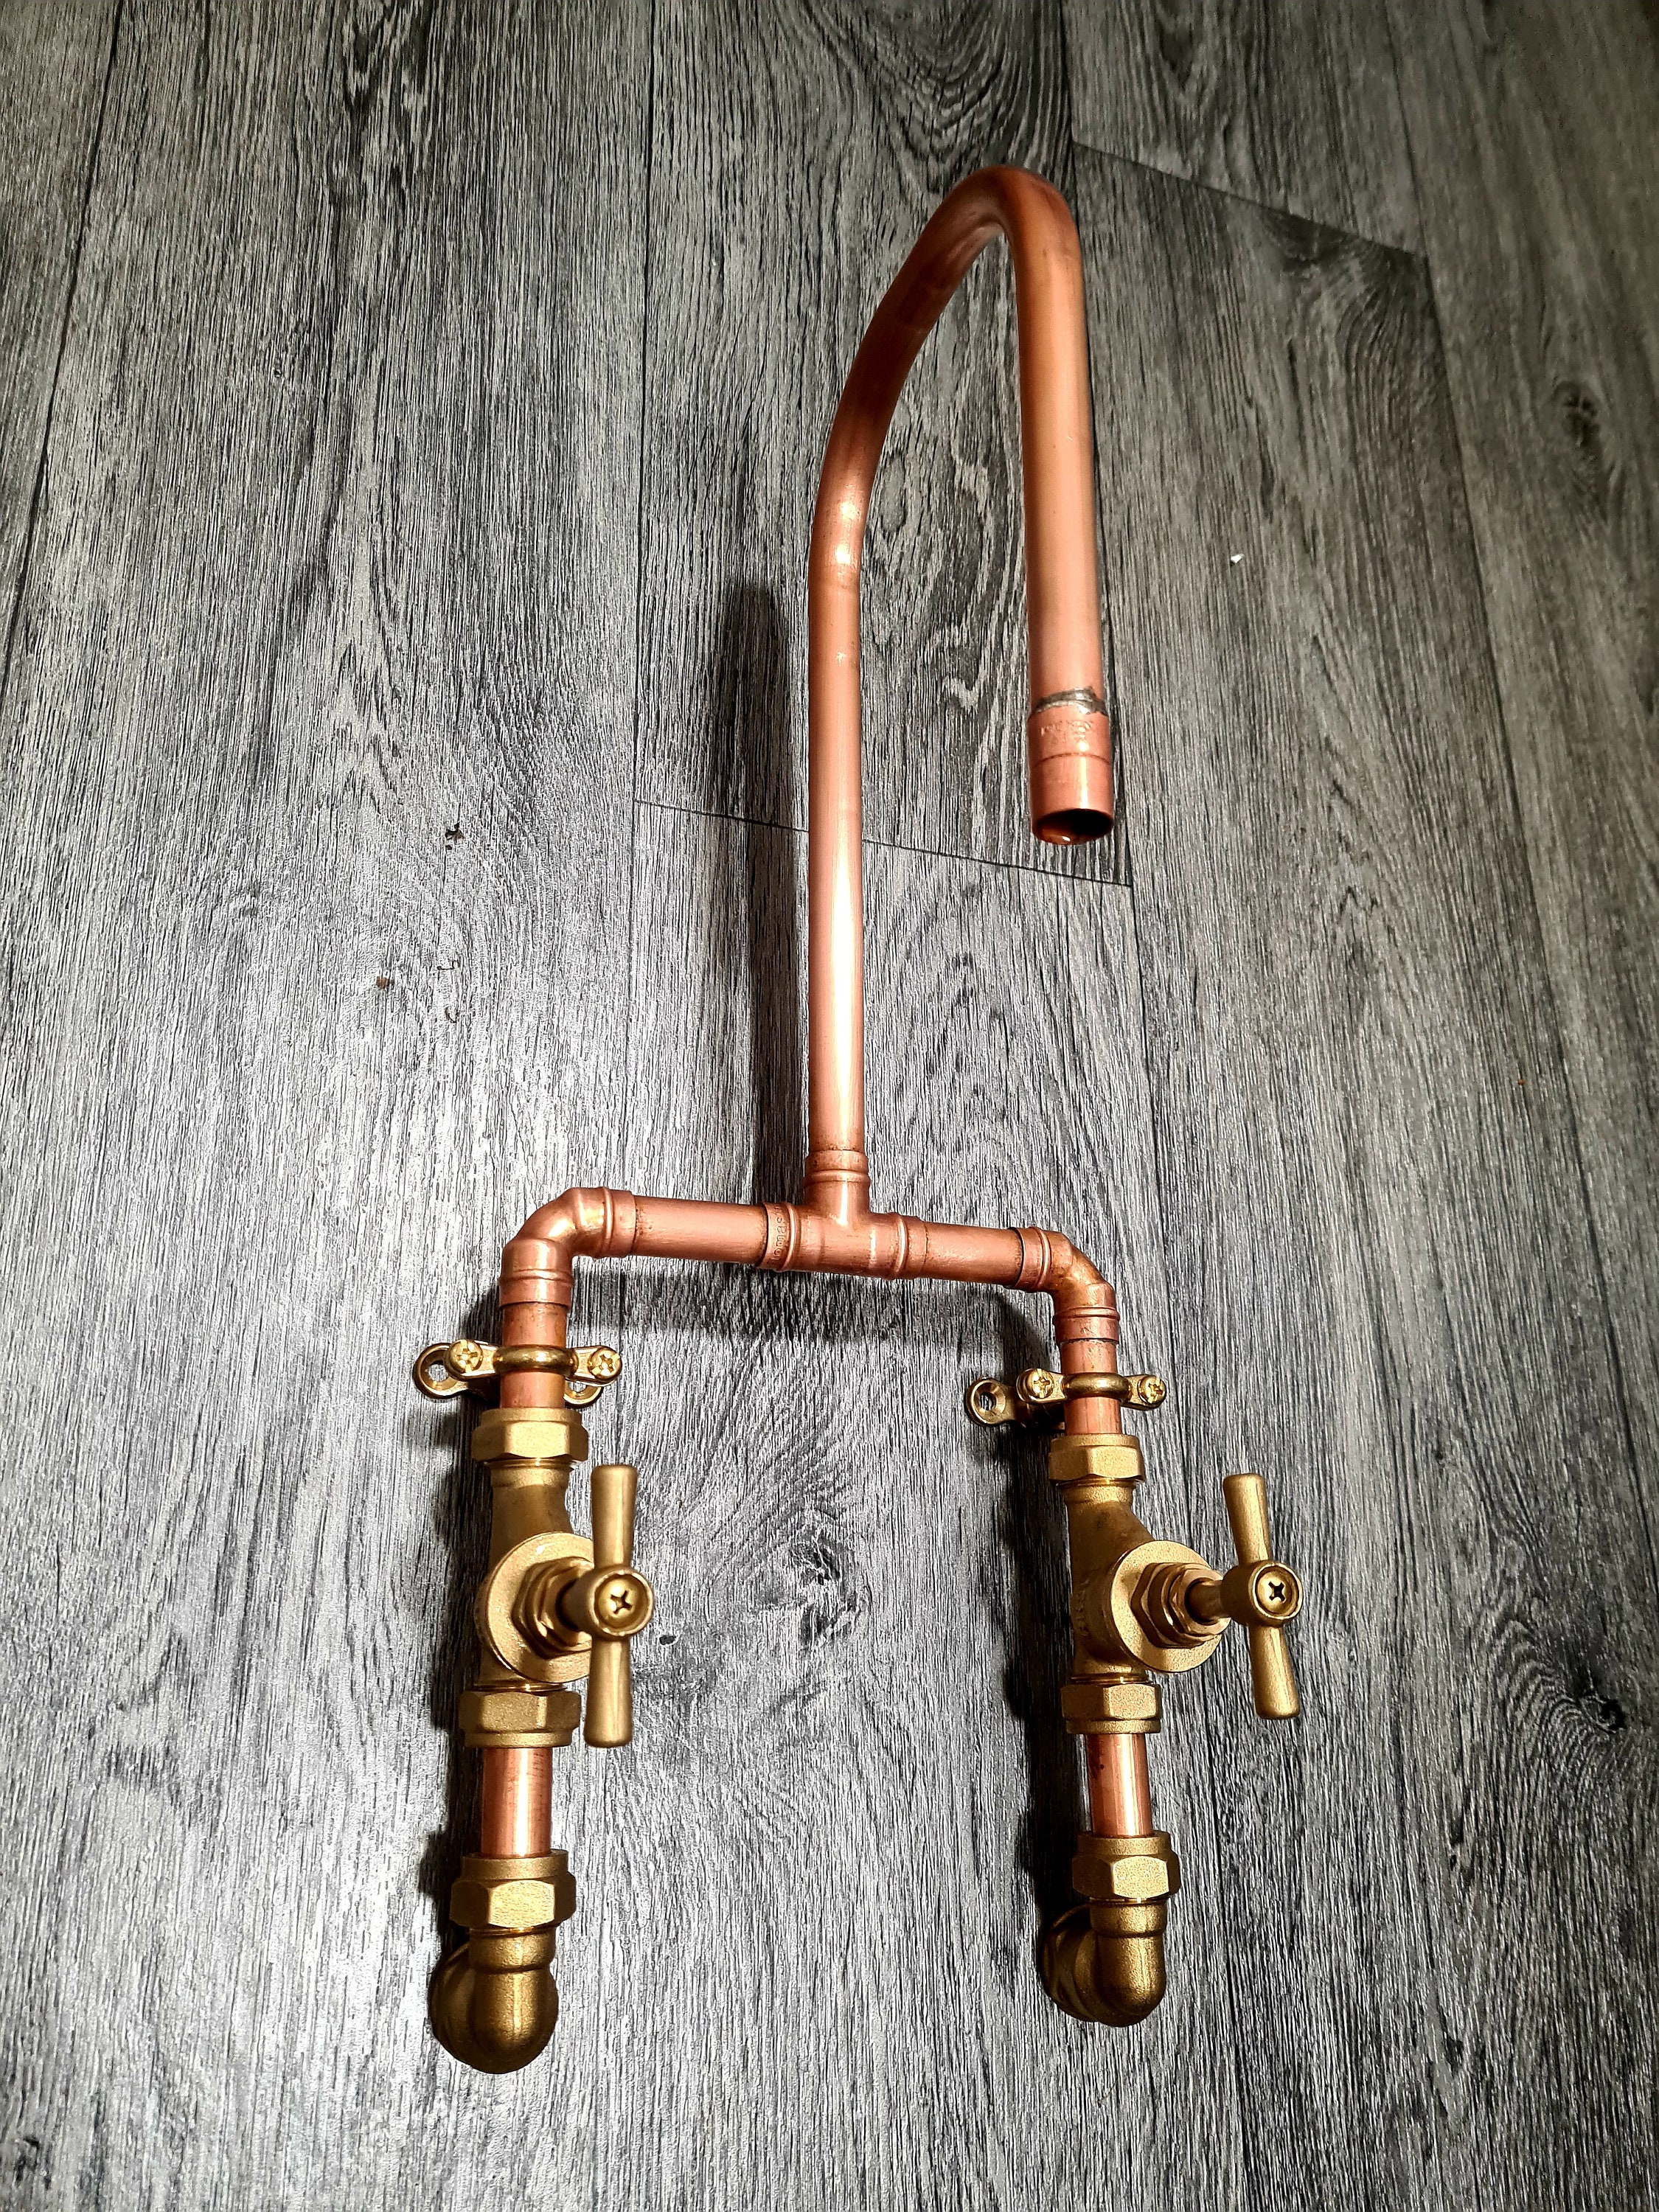 Grifos mezcladores giratorios de tubería de cobre Rústico